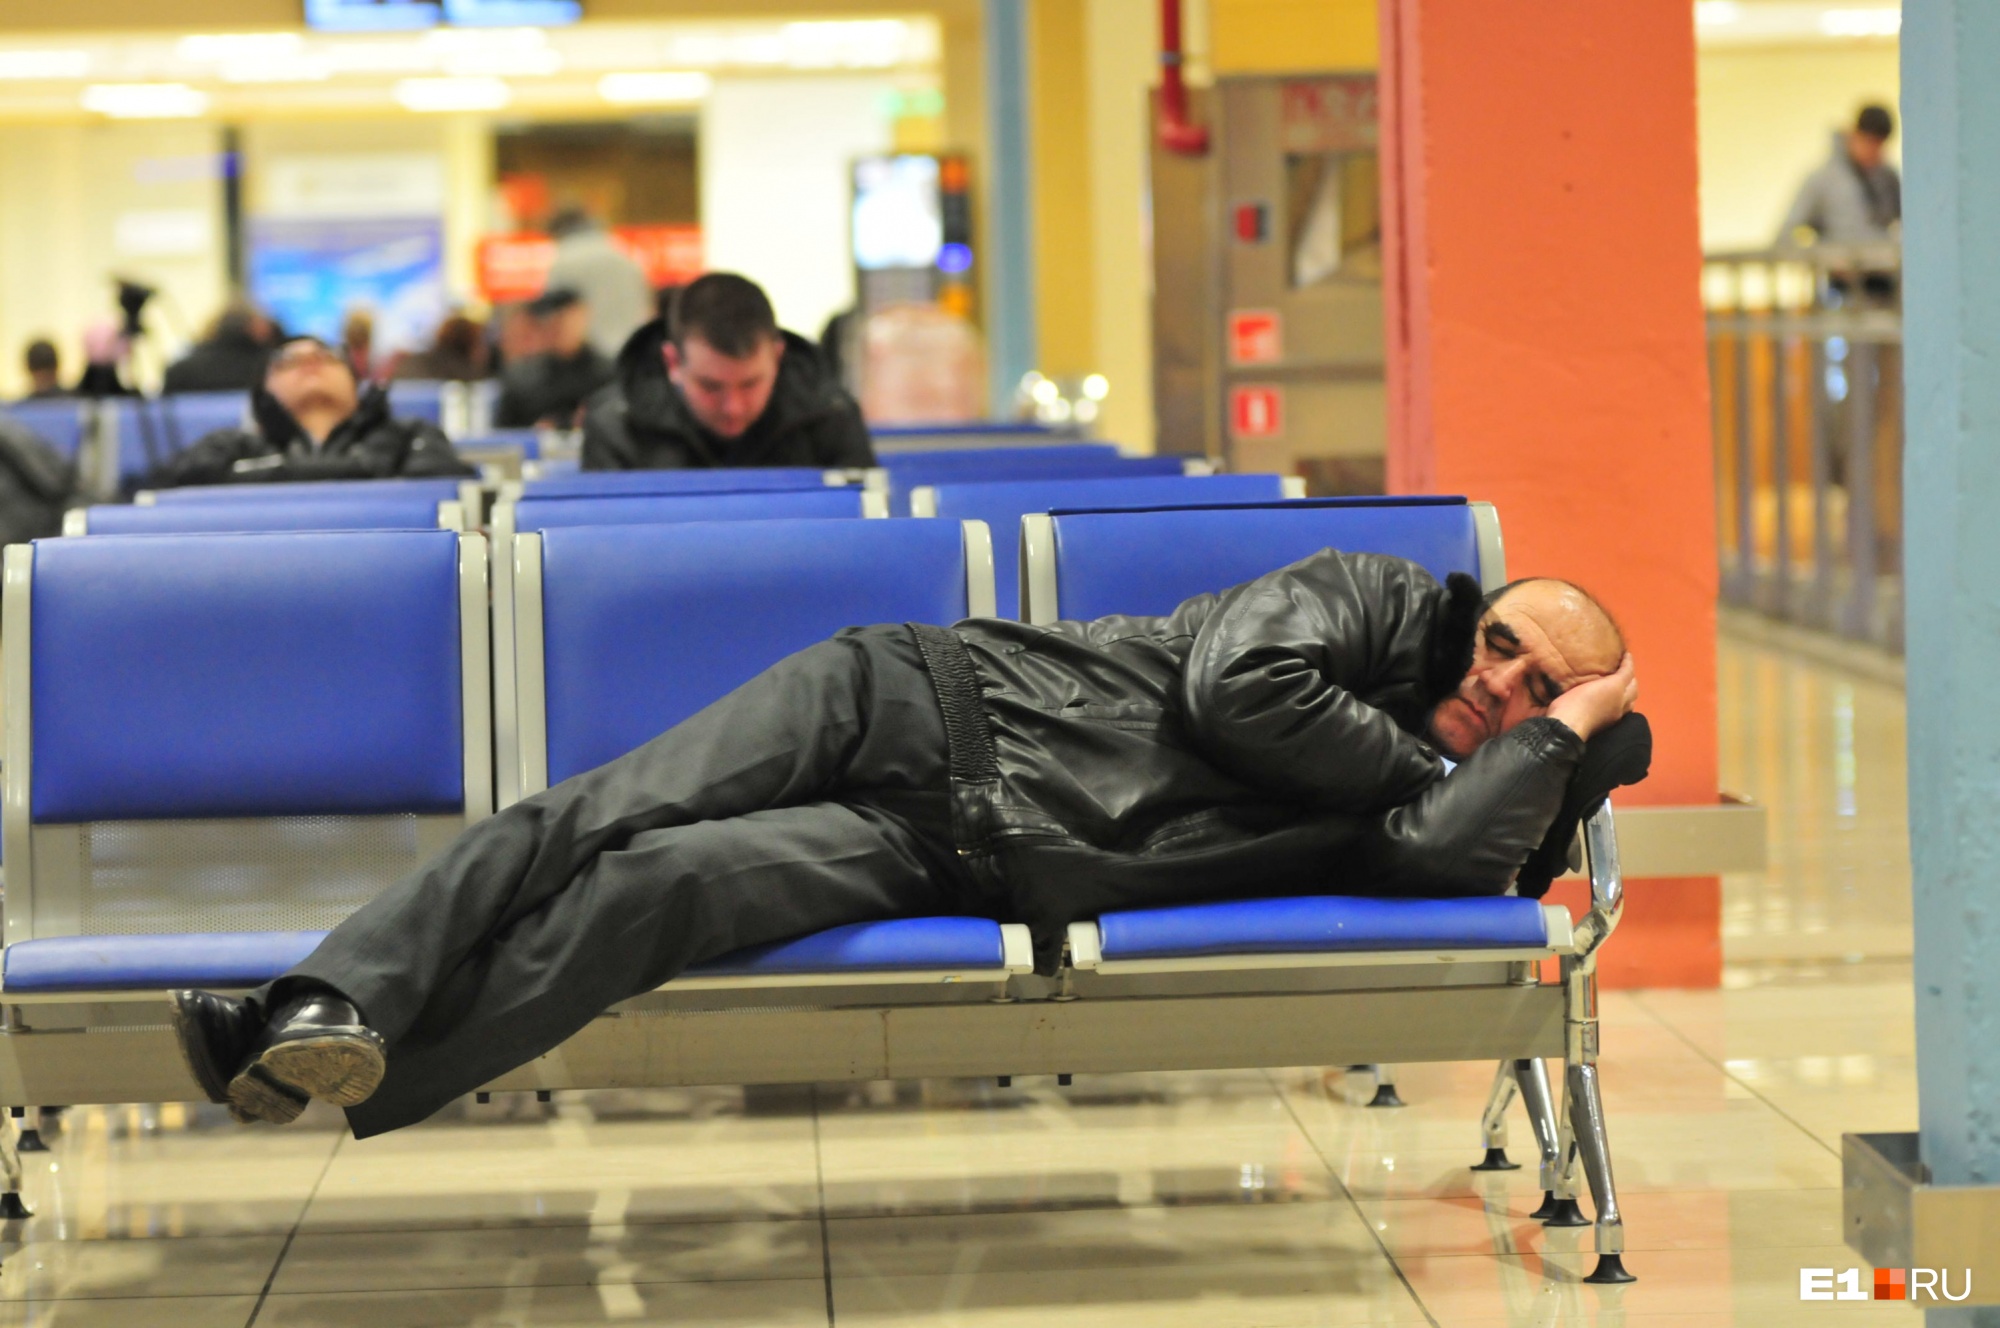 Почему в Кольцово постоянно задерживаются рейсы? Отвечает управляющий аэропортом